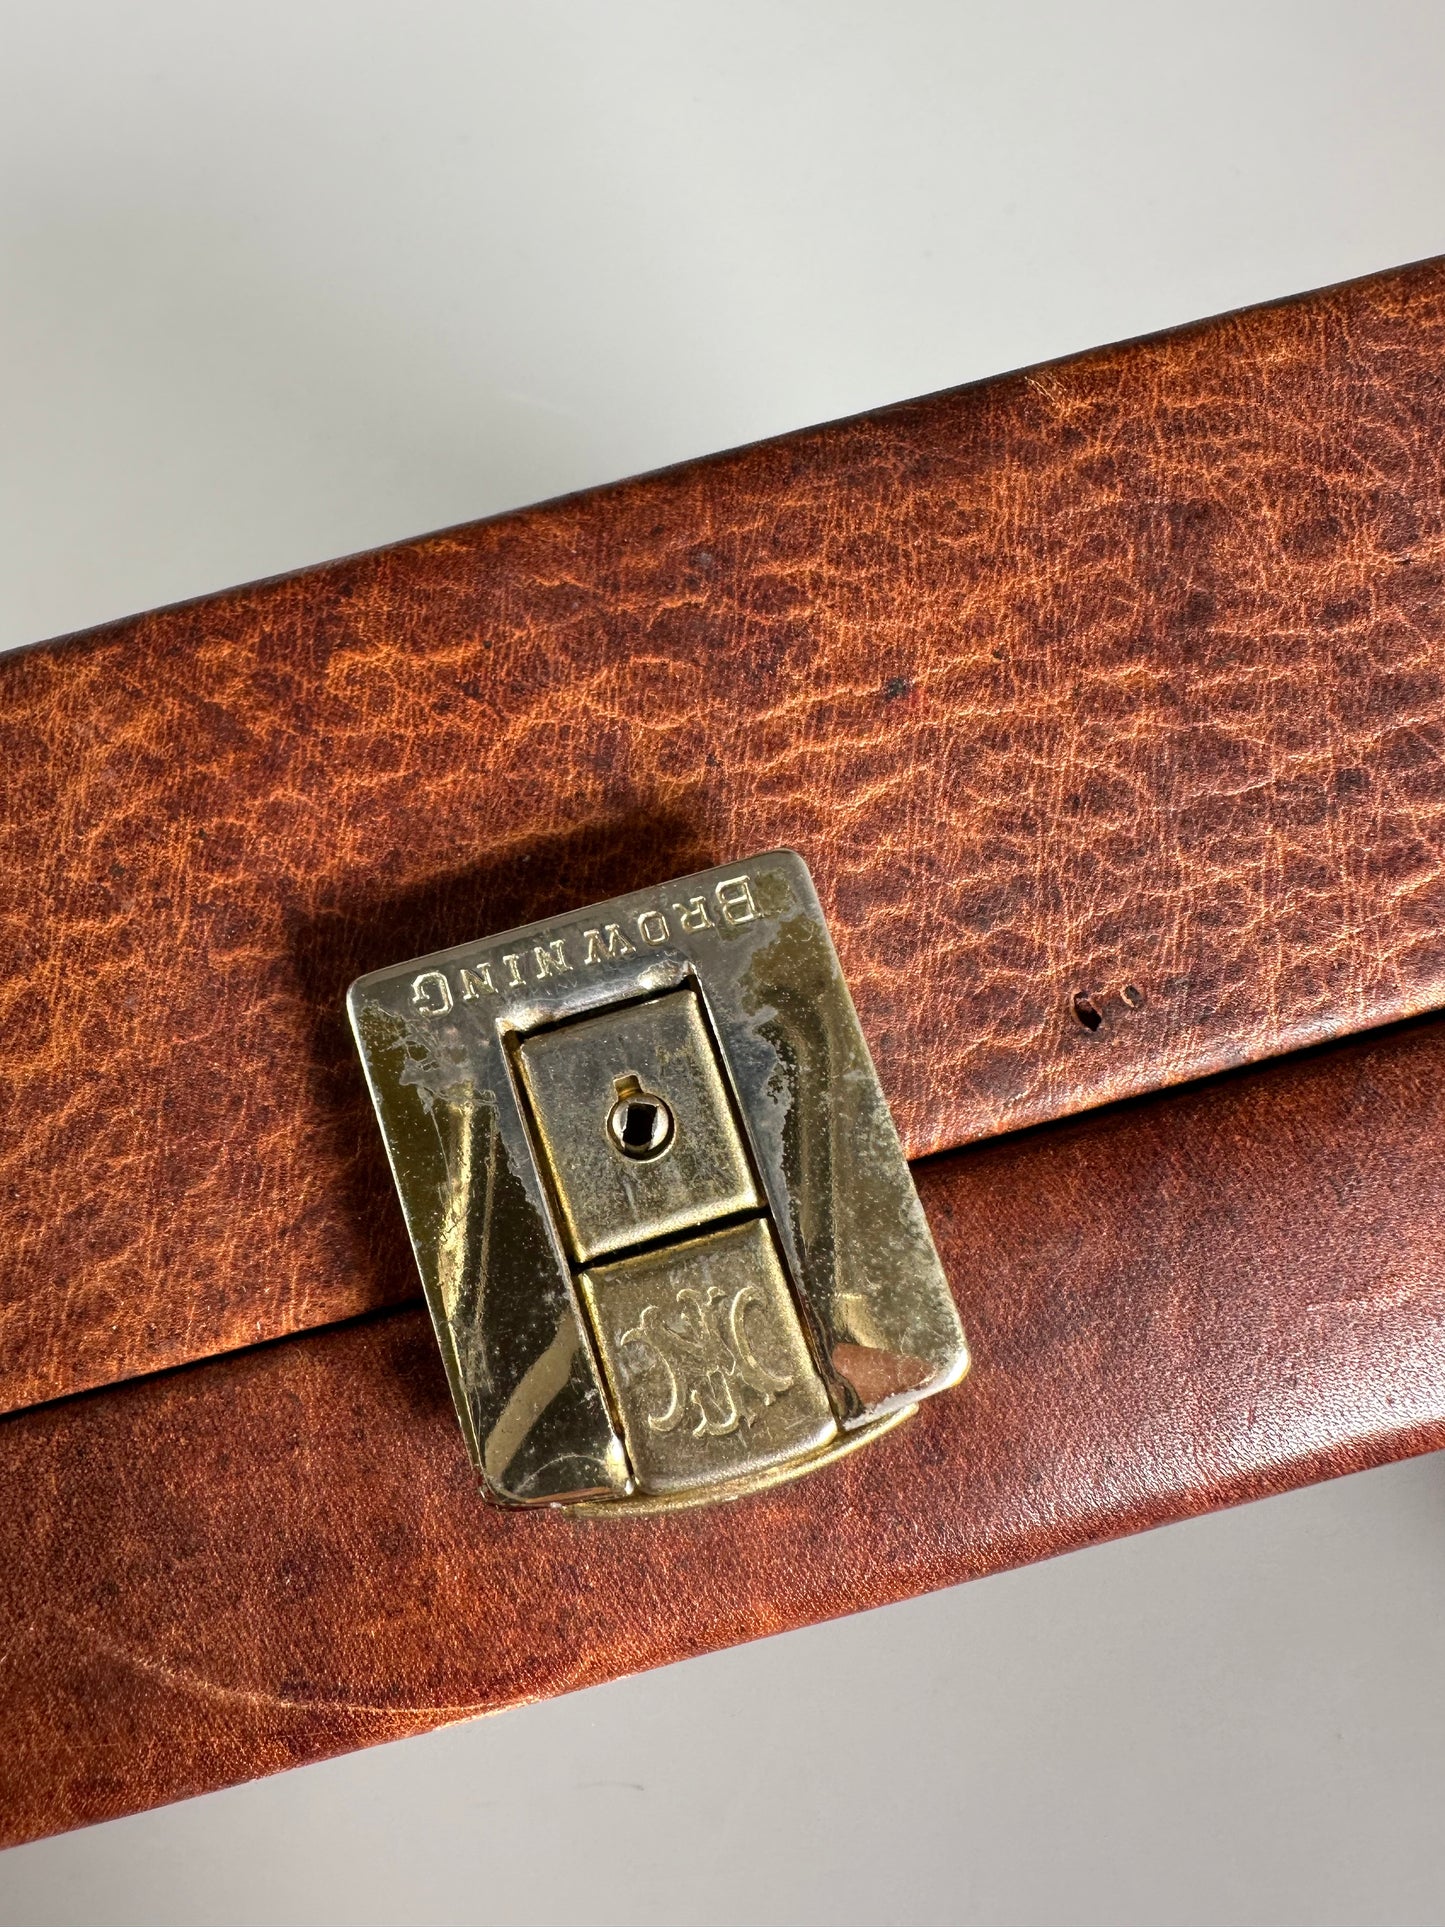 Browning Vintage (Poland) Leather Shotgun Rifle Hard Takedown Case Box